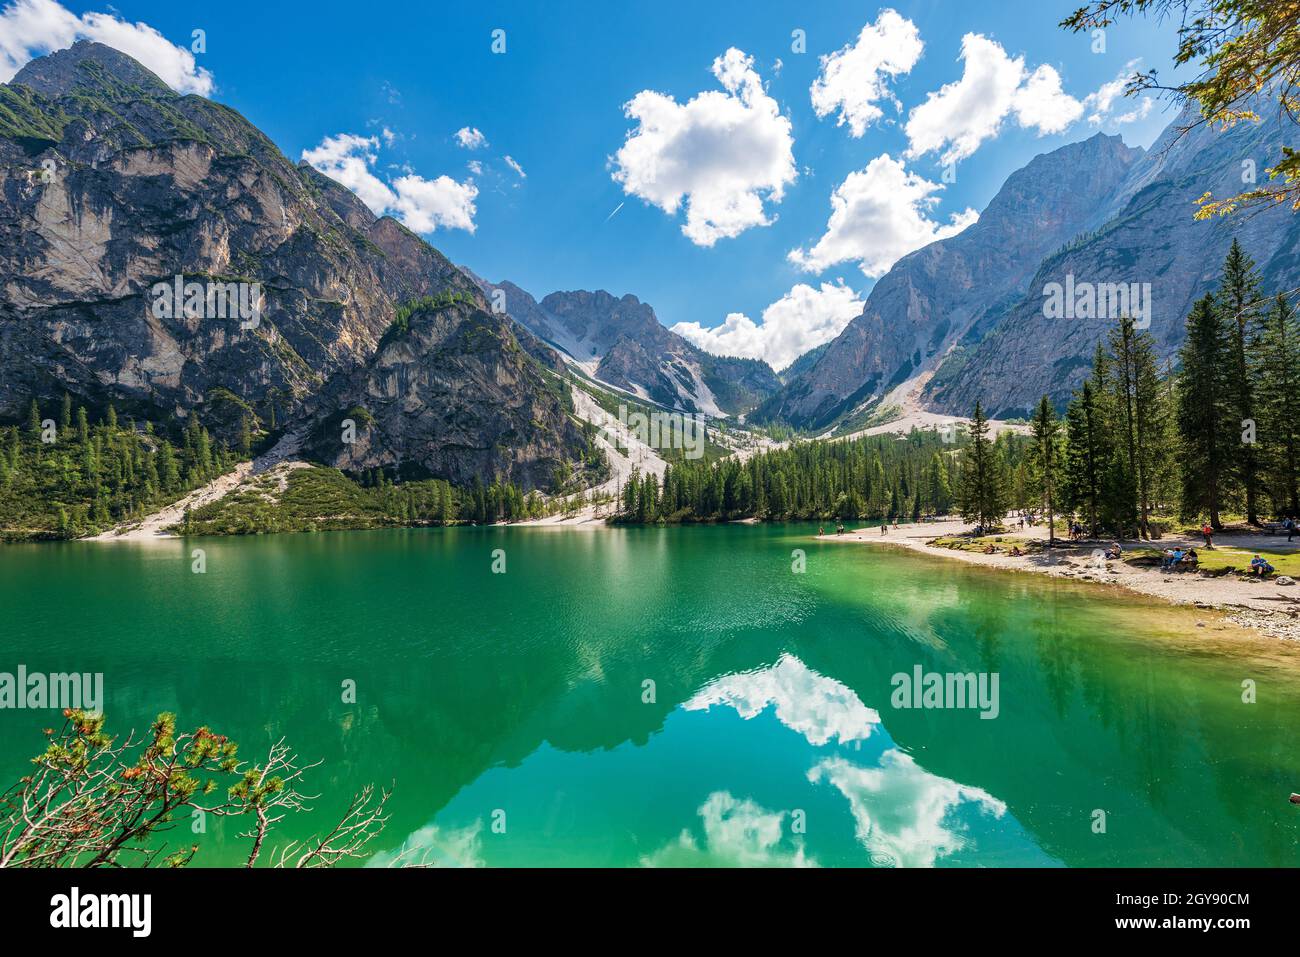 Kleiner schöner See in den italienischen Alpen. Pragser Wildsee oder Lago di Praies und Bergkette von Croda del Becco oder Seekofel und Sasso del Signore. Italien Stockfoto